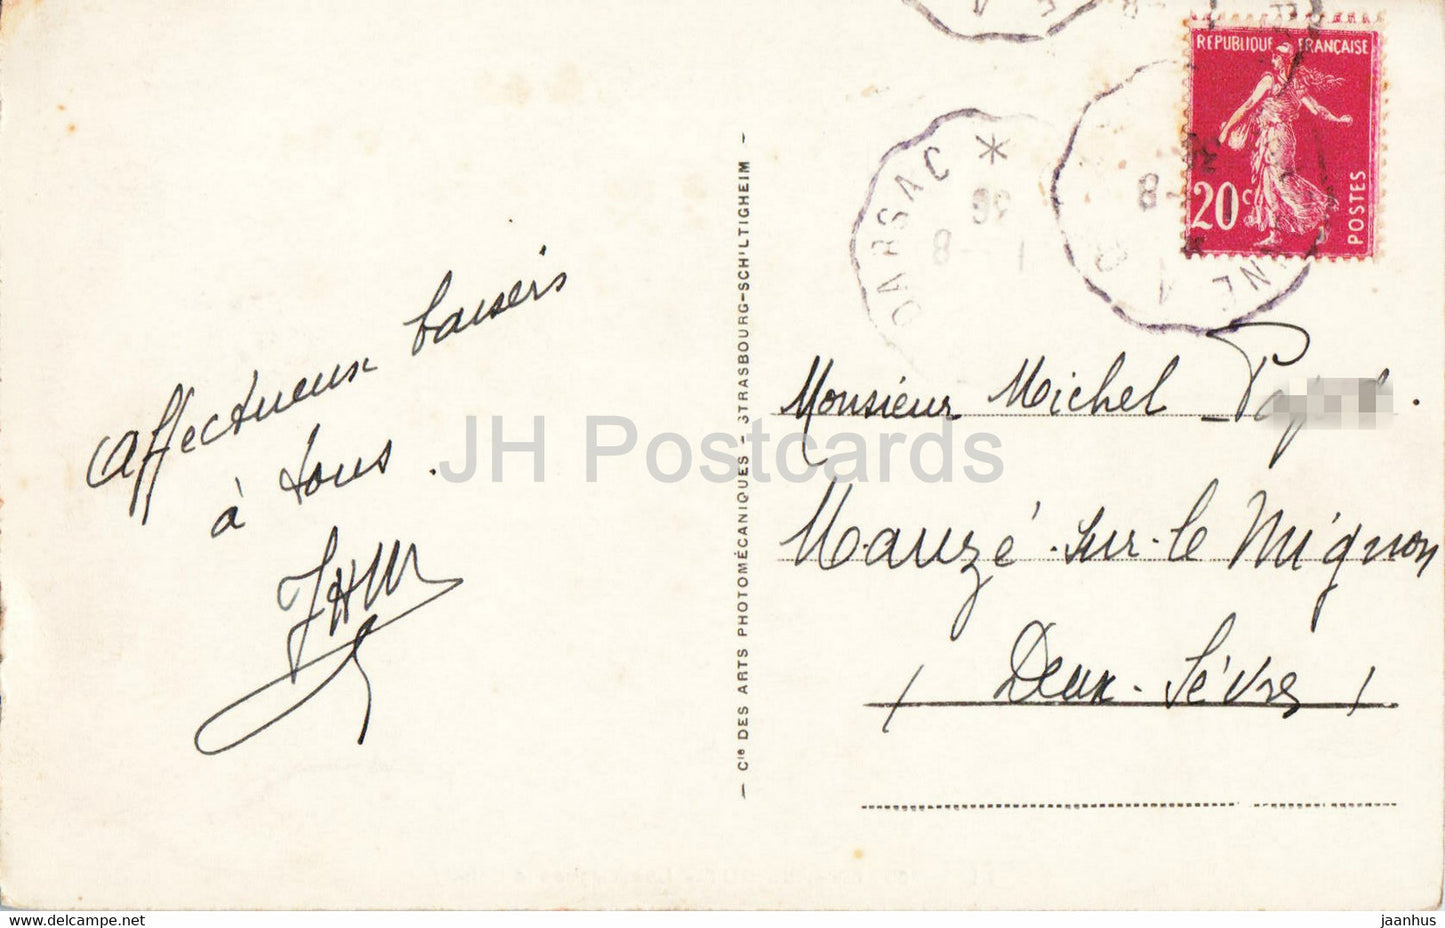 Env du Puy - Les Orgues d'Espaly - 106 - alte Postkarte - 1930er Jahre - Frankreich - gebraucht